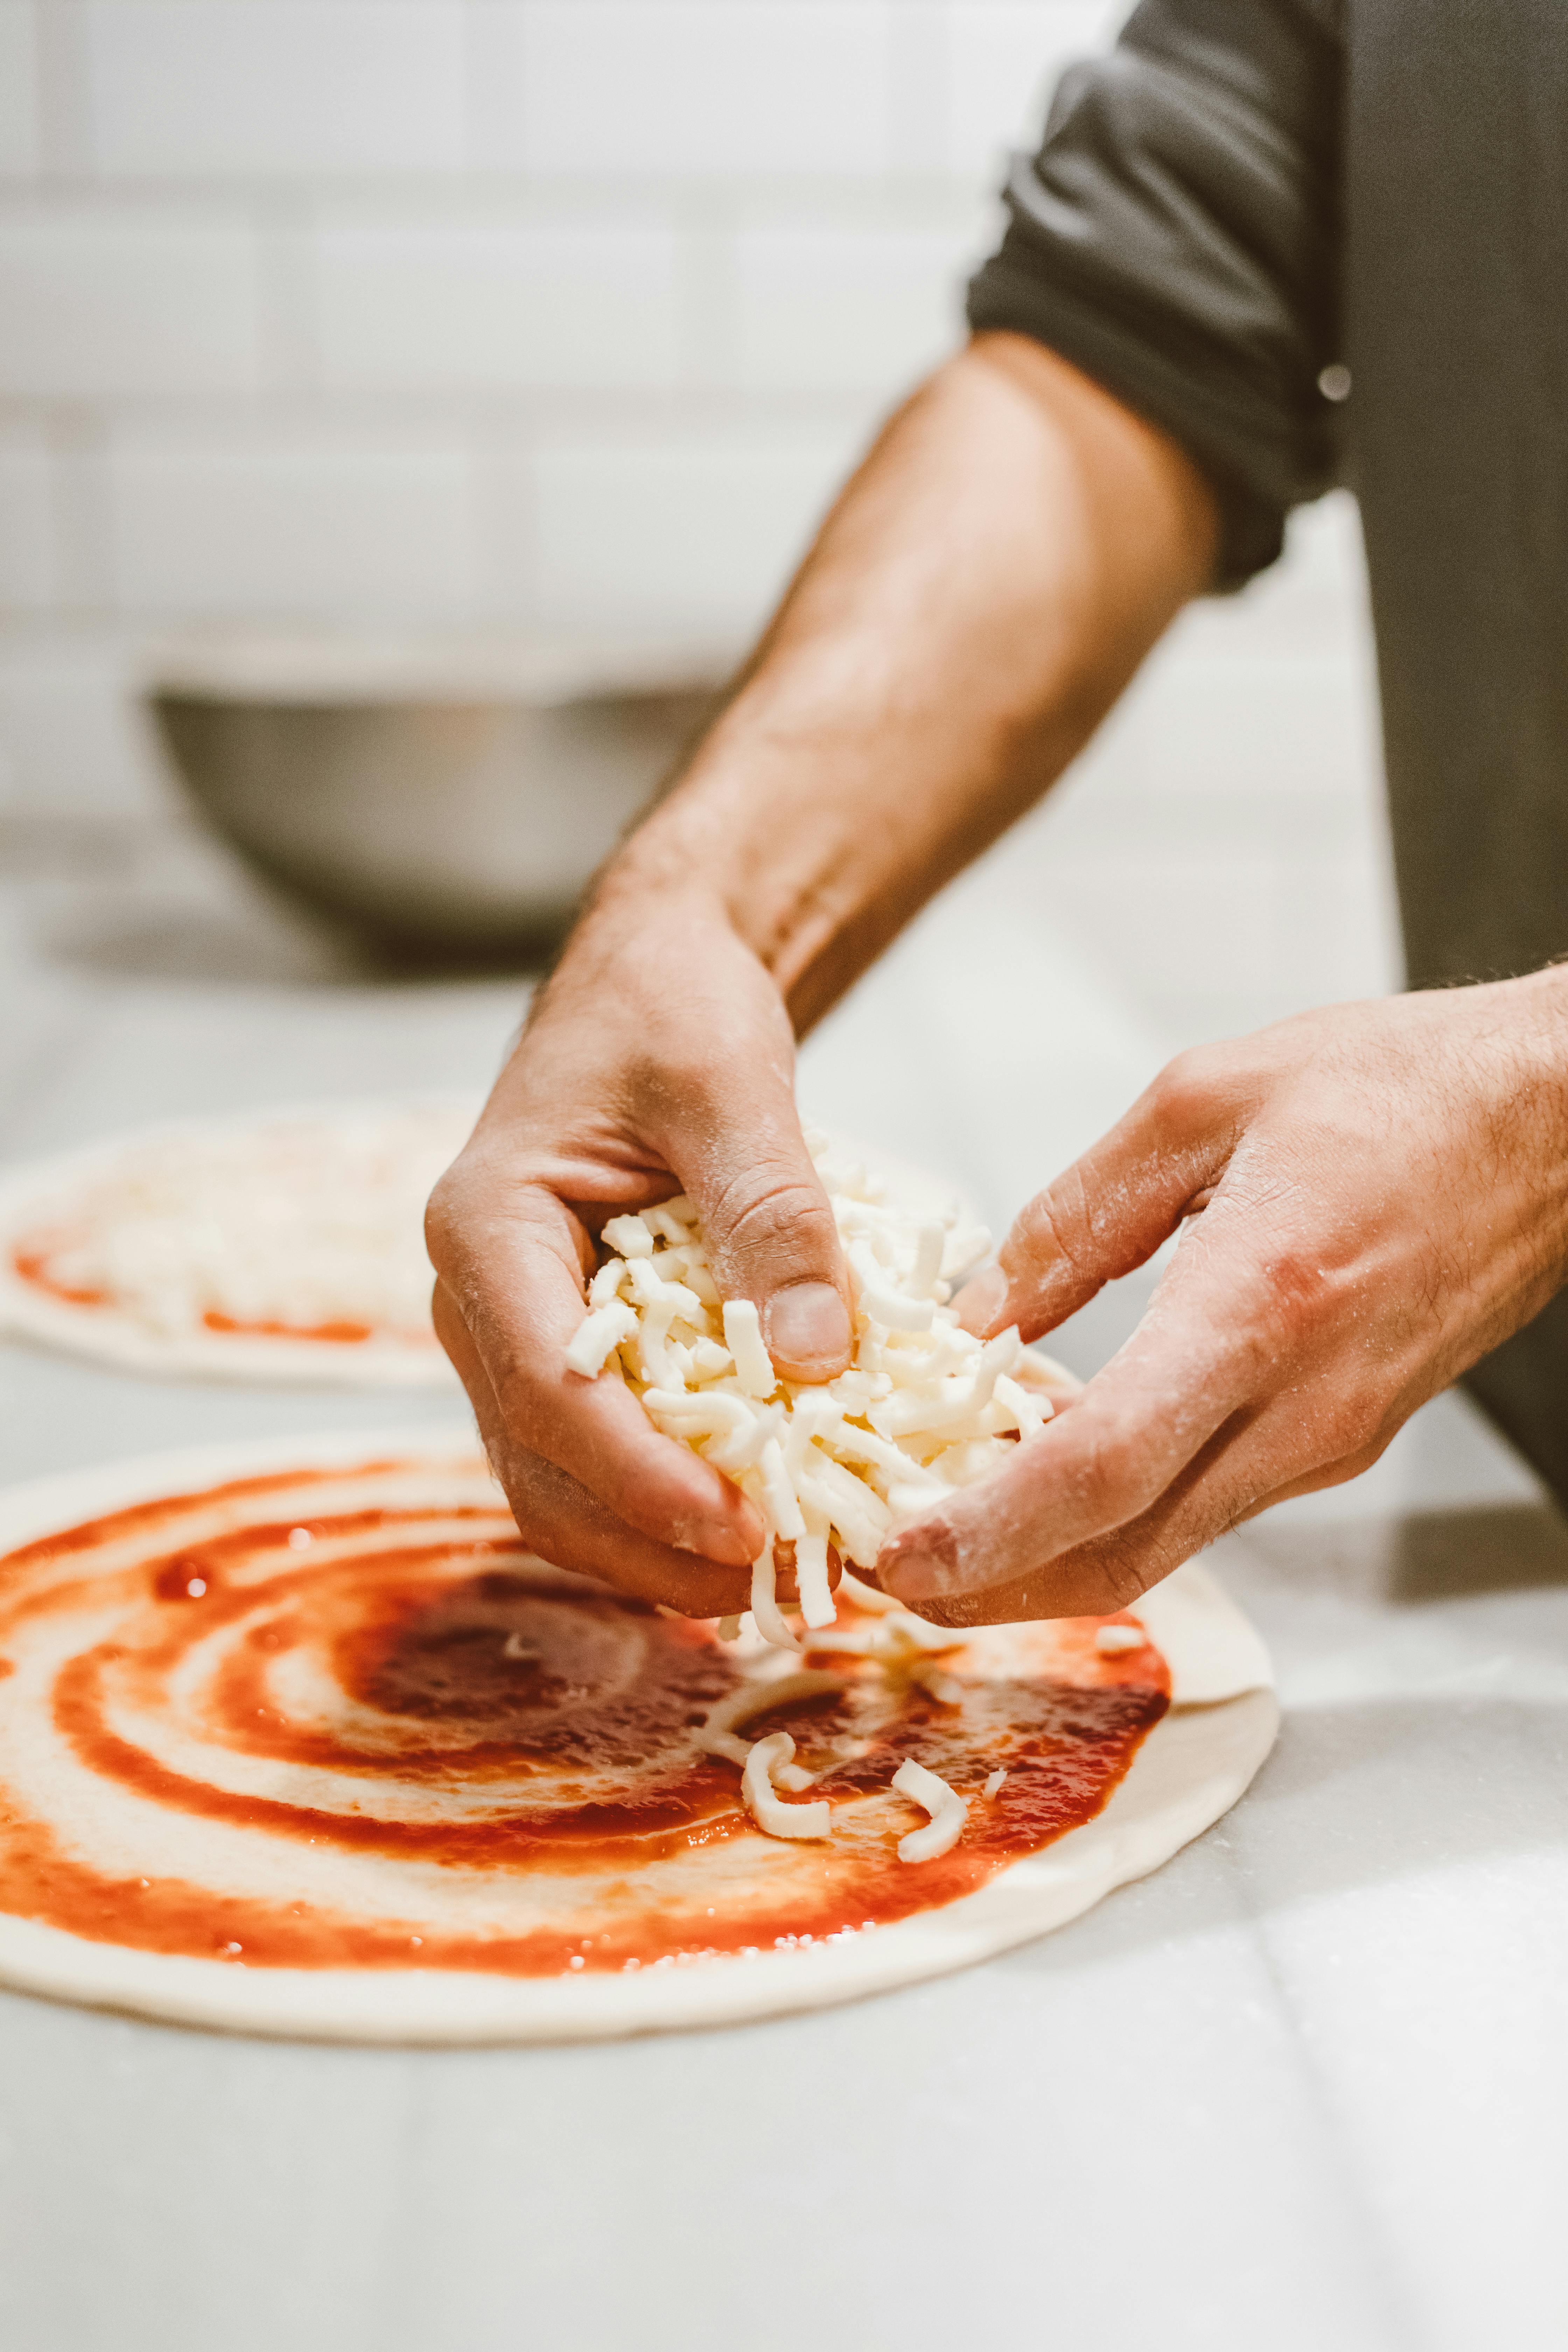 Un homme qui prépare une pizza à partir de zéro | Source : Pexels